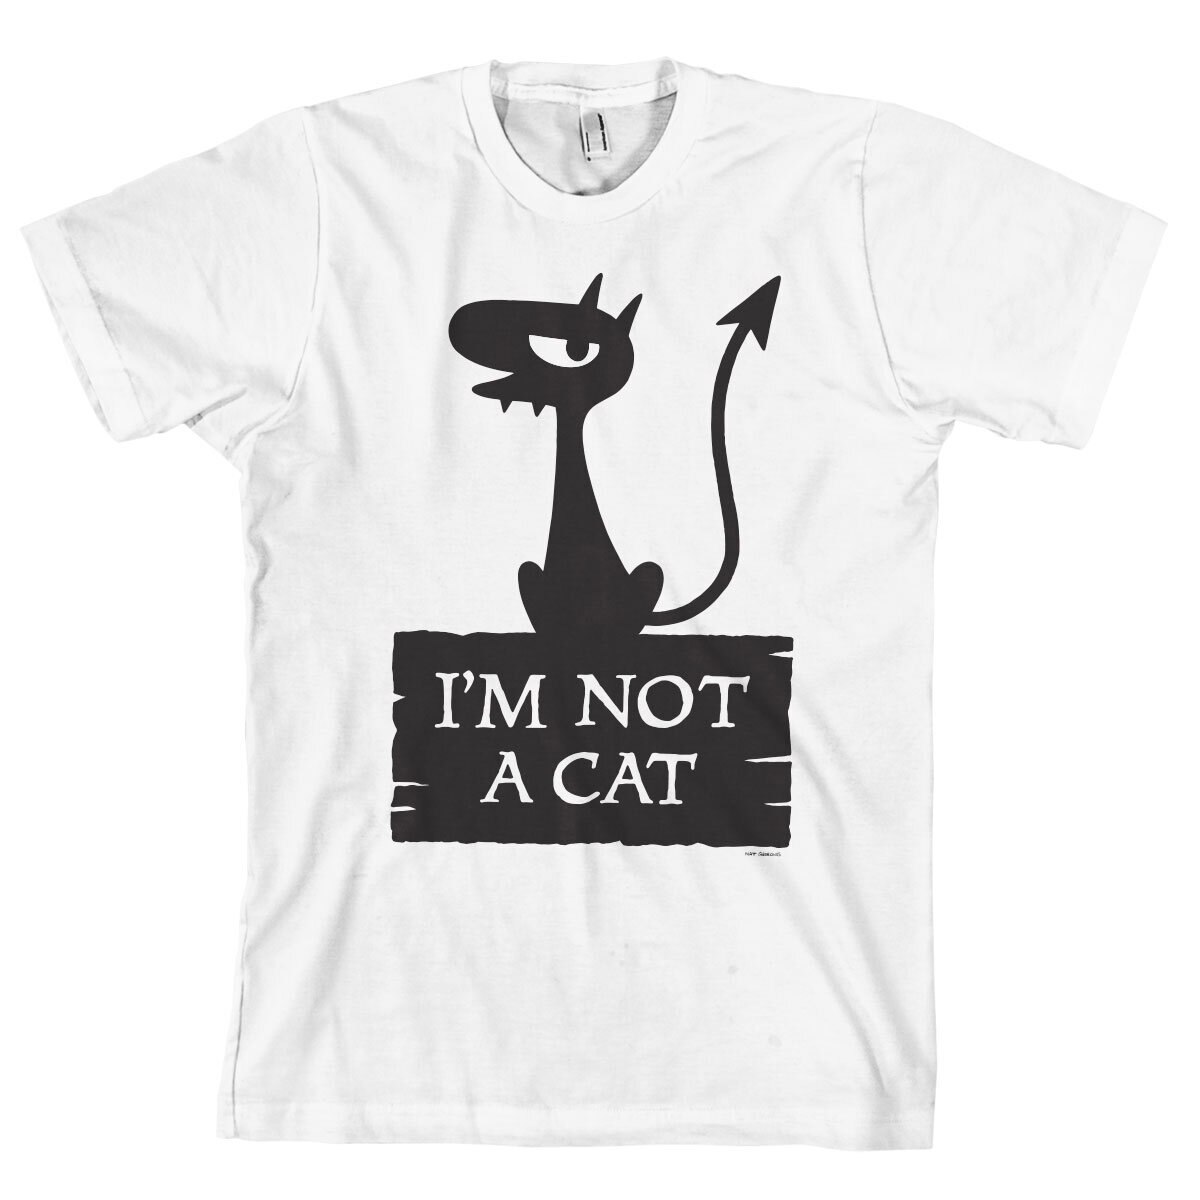 Luci - I'm Not A Cat T-Shirt